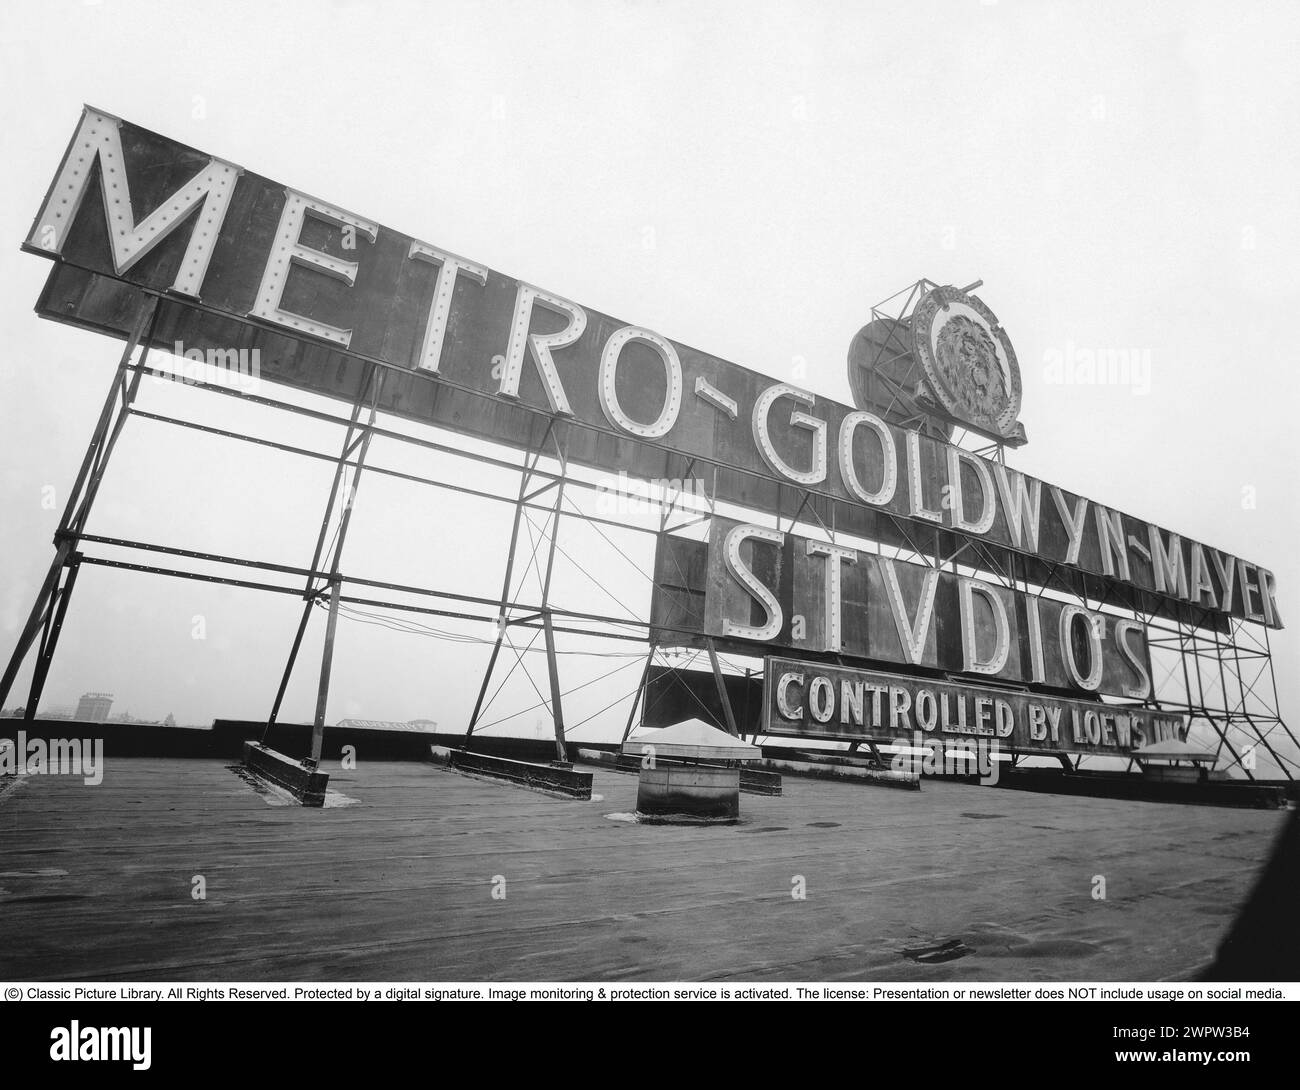 Metro-Goldwyn-Mayer. (MGM) ist ein US-amerikanisches Medienunternehmen, das sich auf Film- und Fernsehproduktion und -Vertrieb spezialisiert hat. Gegründet am 17. April 1924 mit Sitz in Beverly Hills, Kalifornien. MGM wurde von Marcus Loew gegründet, indem Metro Pictures, Goldwyn Pictures und Louis B. Mayer Pictures zu einem Unternehmen zusammengeführt wurden. Es stellte eine Reihe bekannter Schauspieler als Kontrahenten ein – sein Slogan lautete „mehr Stars als es im Himmel gibt“ – und wurde bald Hollywoods renommierteste Filmfirma, die populäre Musikfilme produzierte und zahlreiche Academy Awards gewann. MGM besaß auch ein Filmgestüt Stockfoto